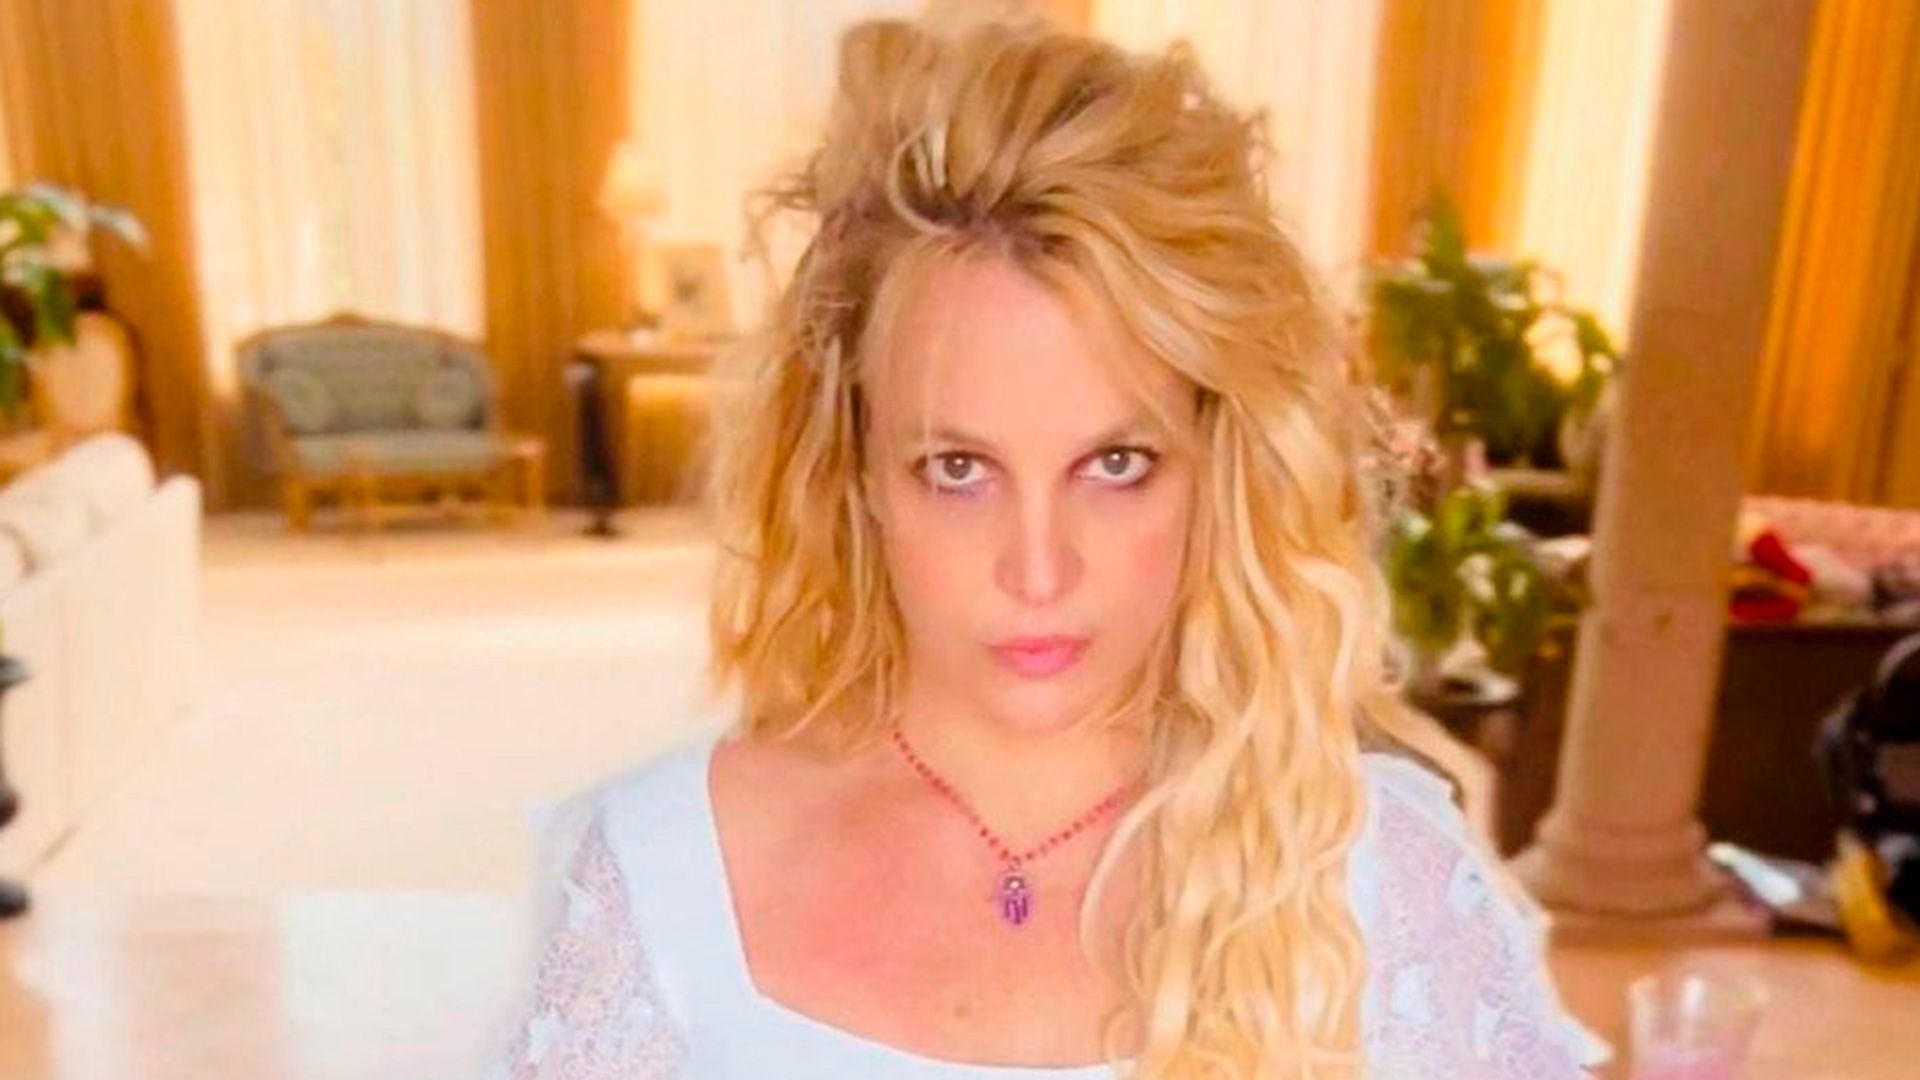 Por alrededor de dos años, Britney sólo comió pollo con verduras enlatadas, lo cual describe como "degradante"
(@britneyspears)